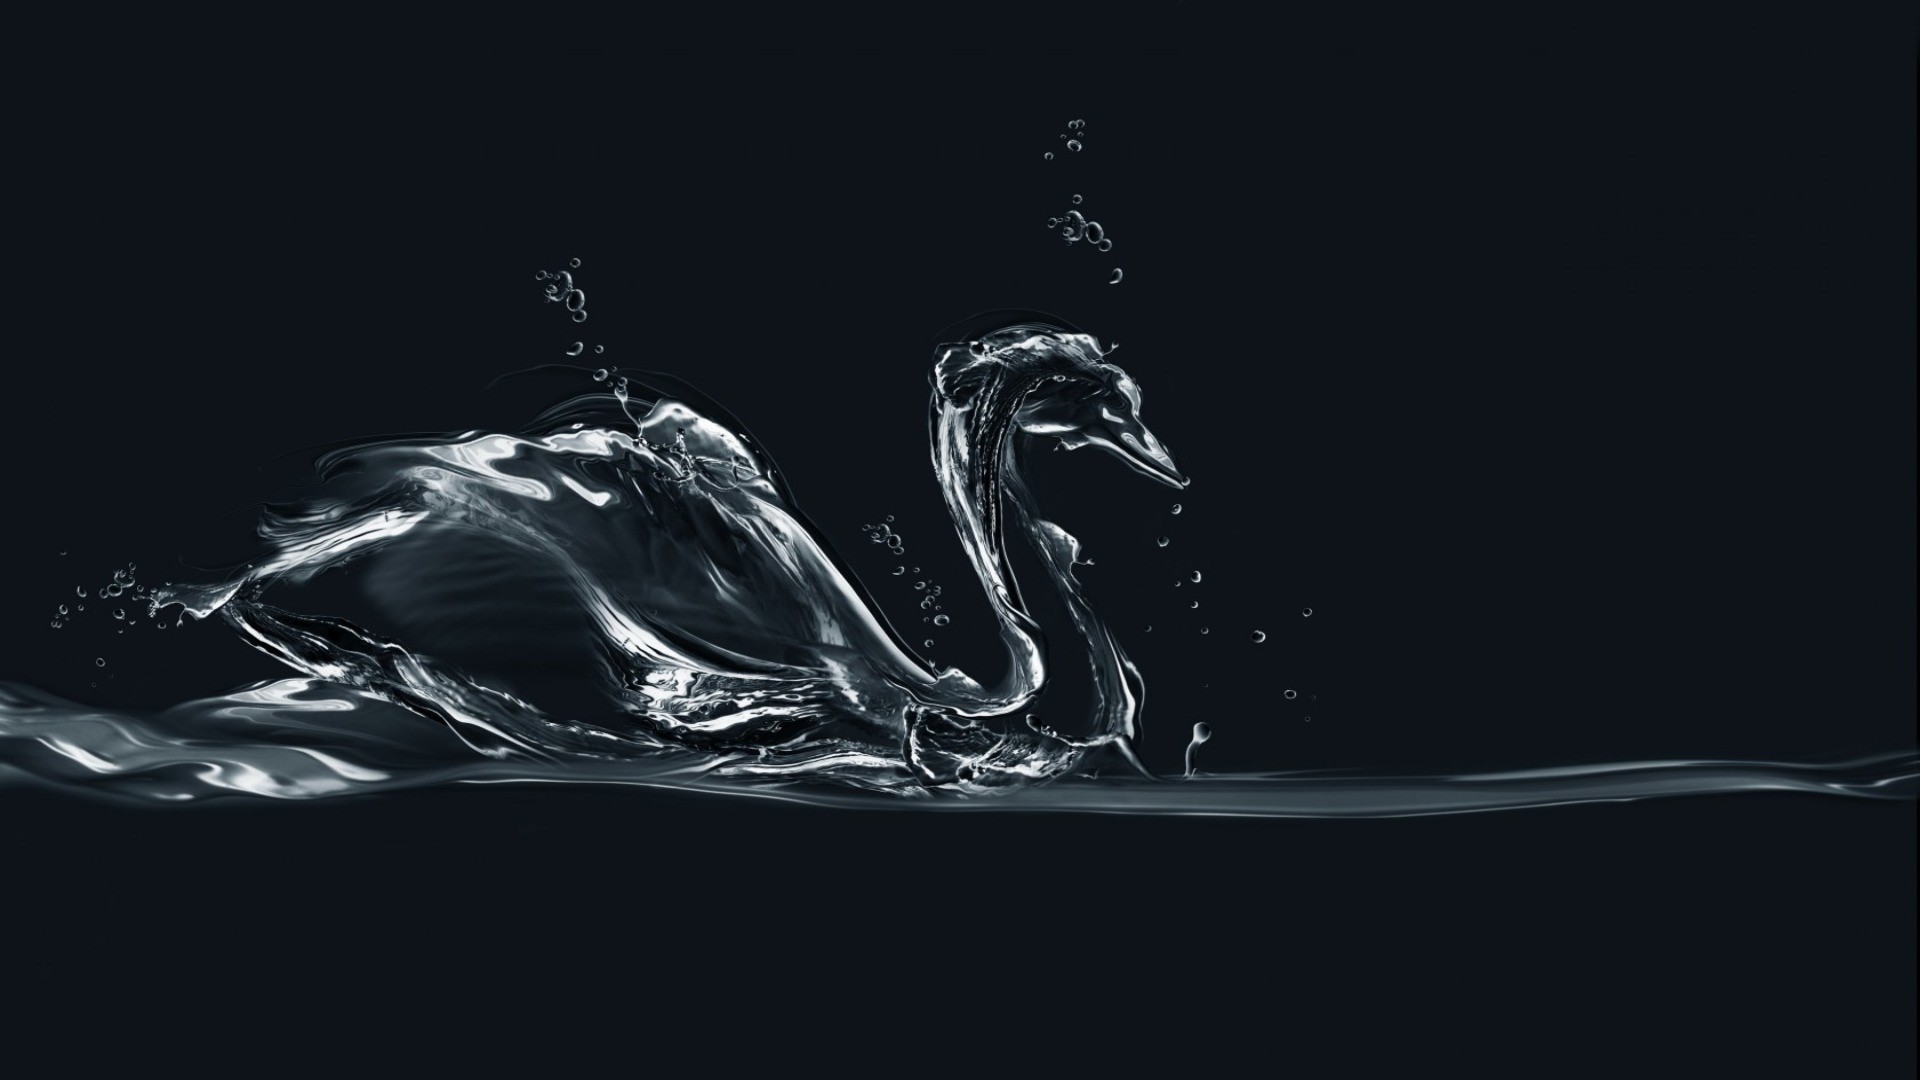 абстракция и графика движения всплеск падение чистота действие пить мокрый гладкая подводный жидкость волна холодная пузырь чистые воды капли еда вид сбоку